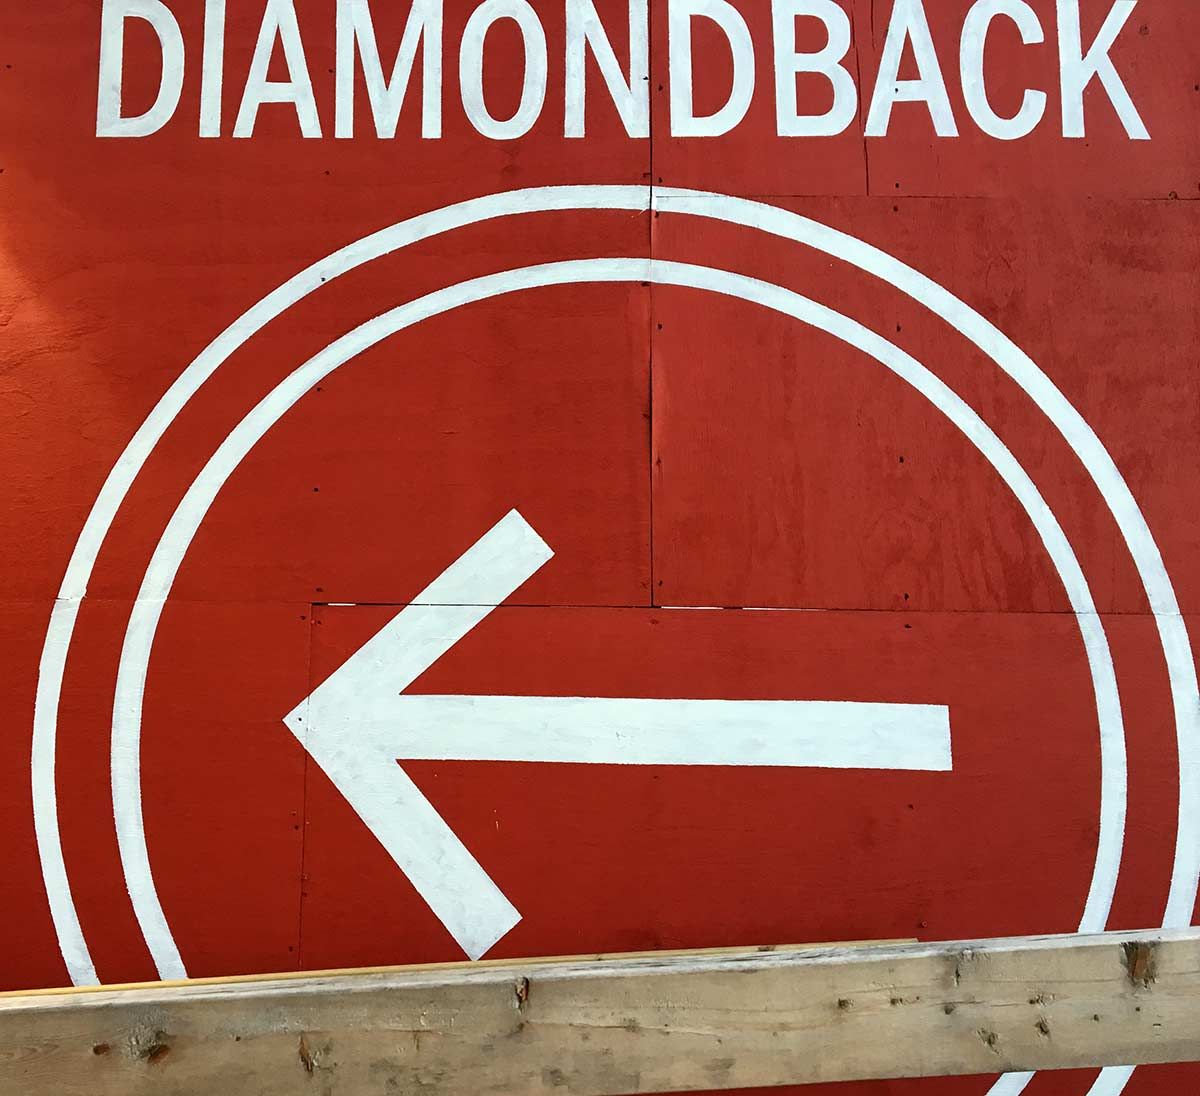 Diamondback Brewing Company